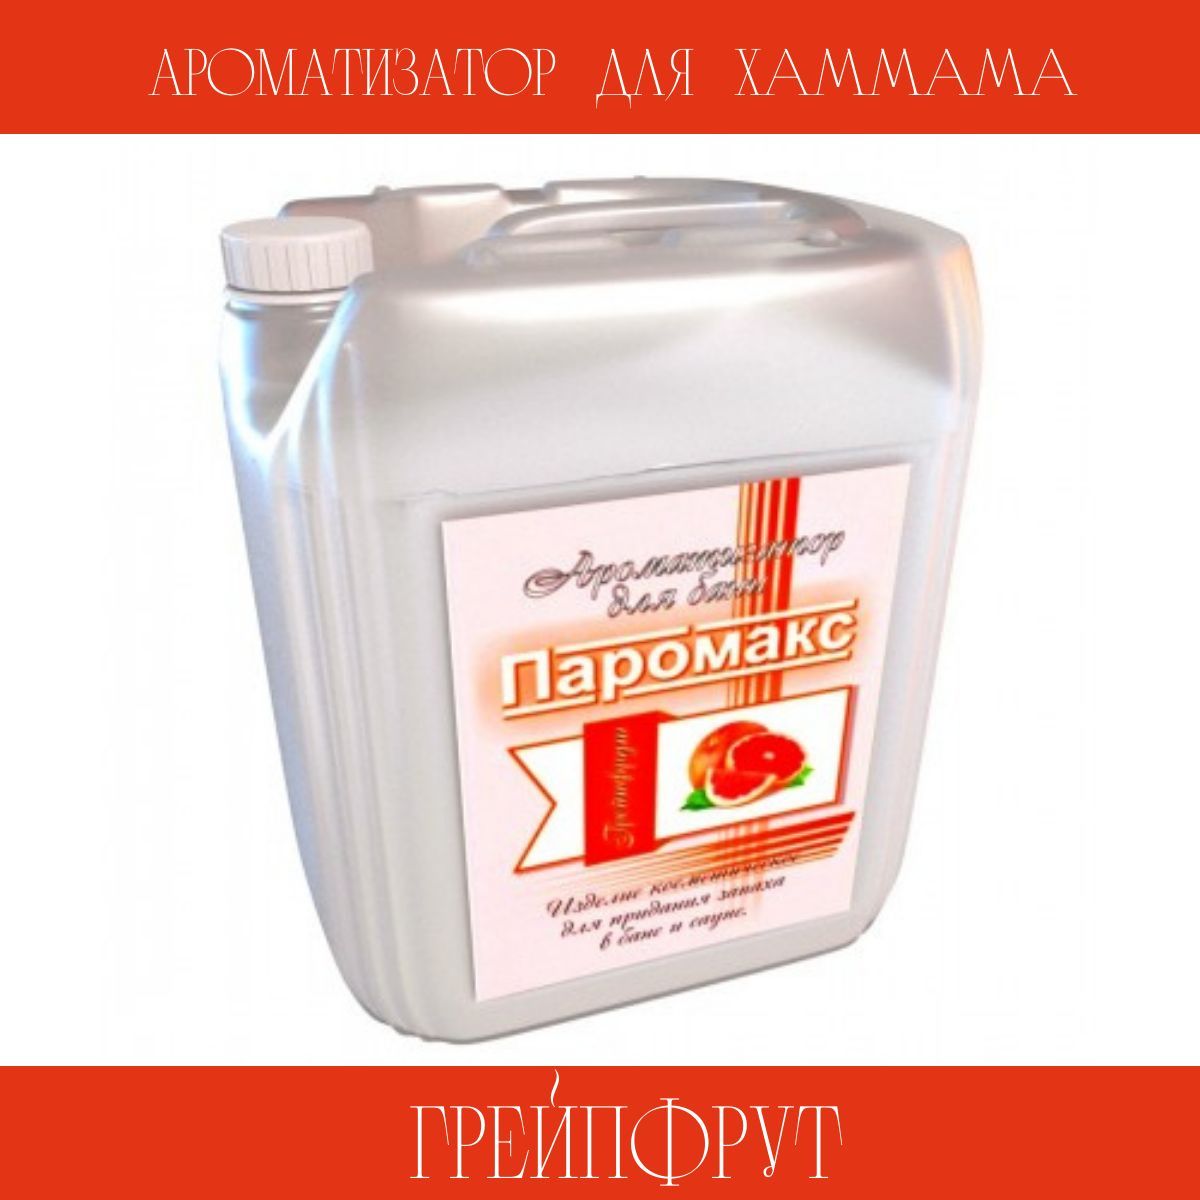 Ароматизатор для бани грейпфрут Паромакс Премиум 19298 5 л